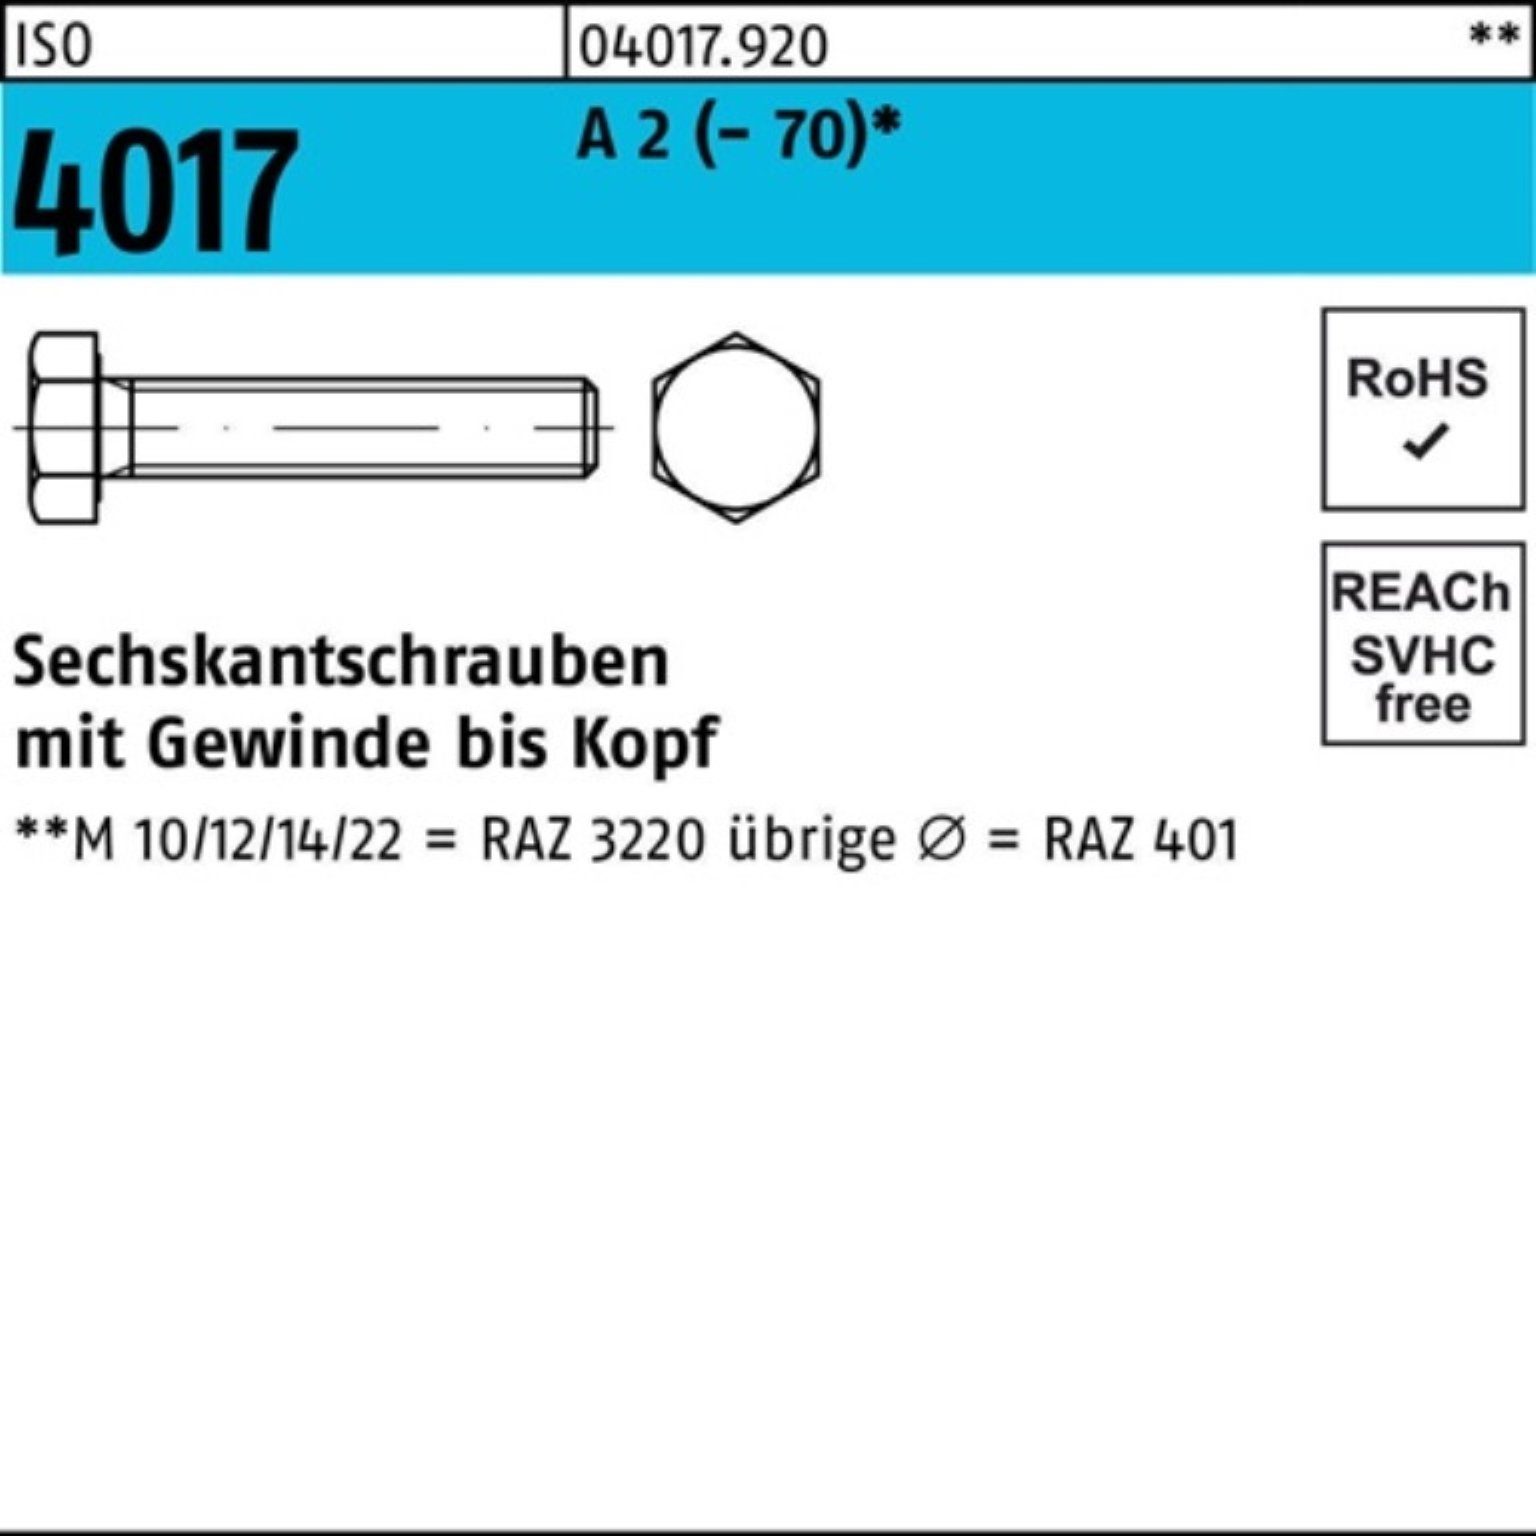 M12x 16 Bufab Sechskantschraube Pack 4017 100er (70) Stück 100 VG 2 A Sechskantschraube ISO